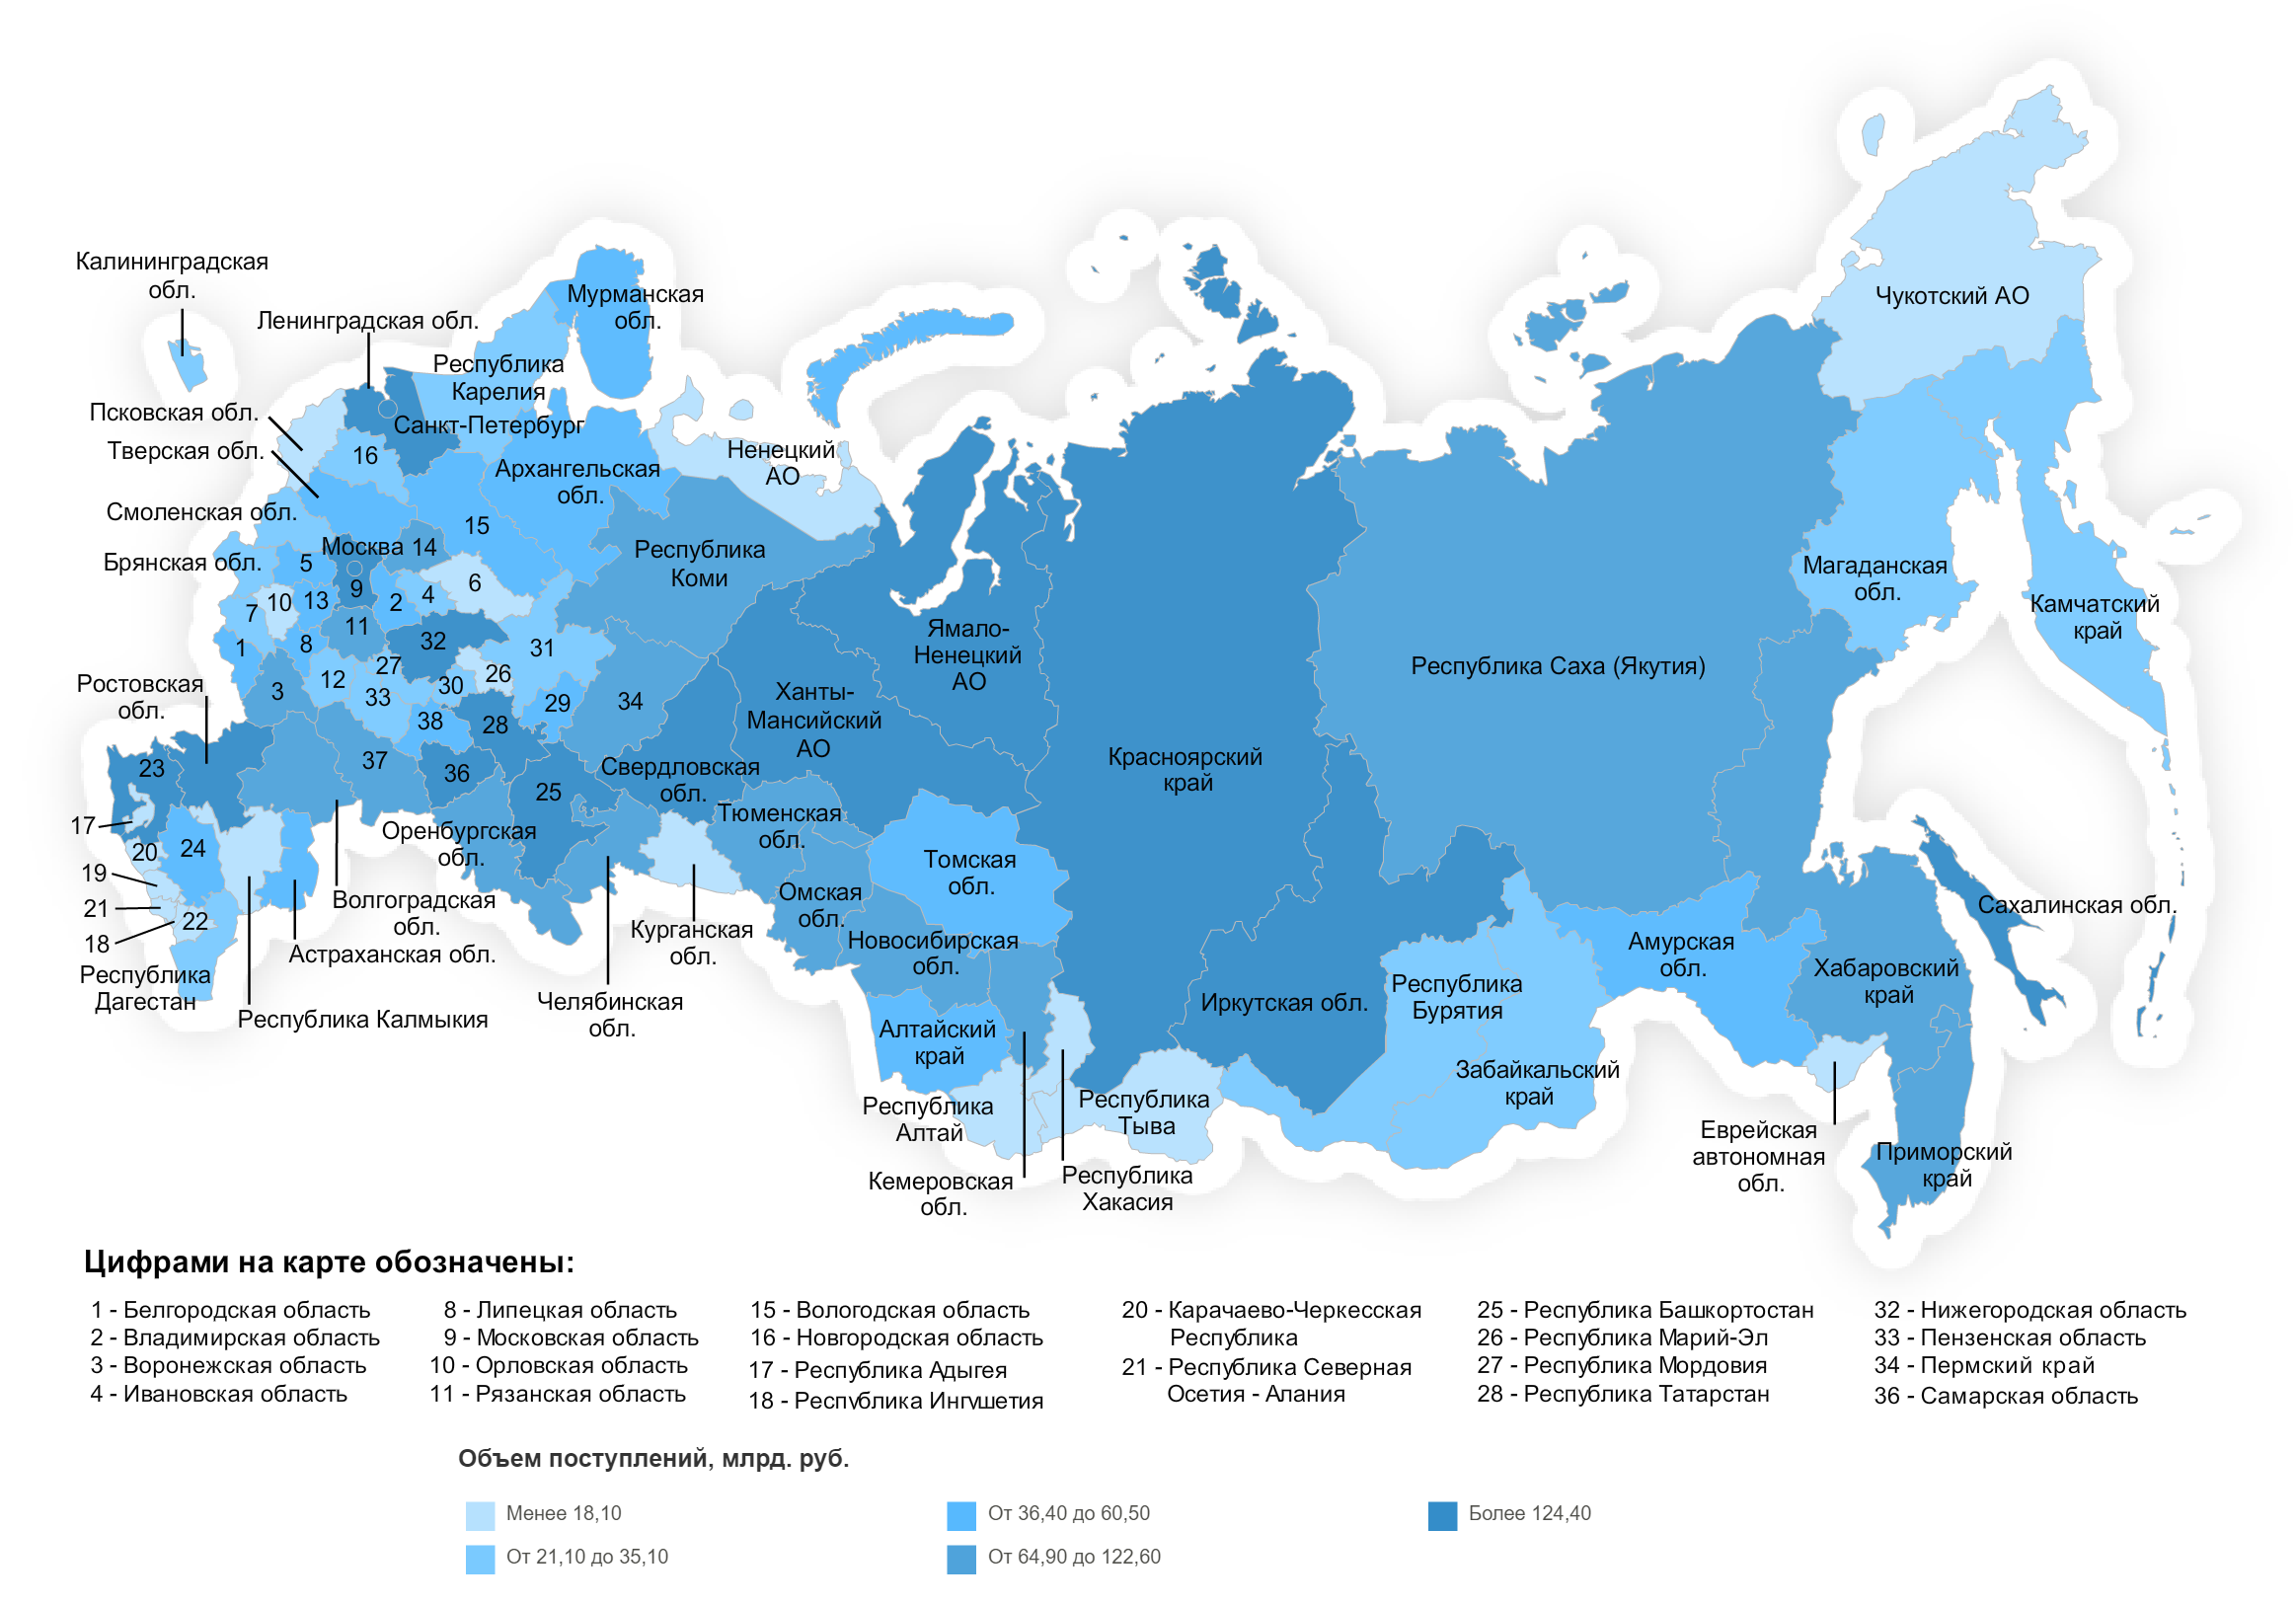 Официальная россия субъекты. Карта России с регионами и областями. Карта России с субъектами Федерации. Карта РФ субъекты Федерации 2022. Карта России с регионами и областями 2022.